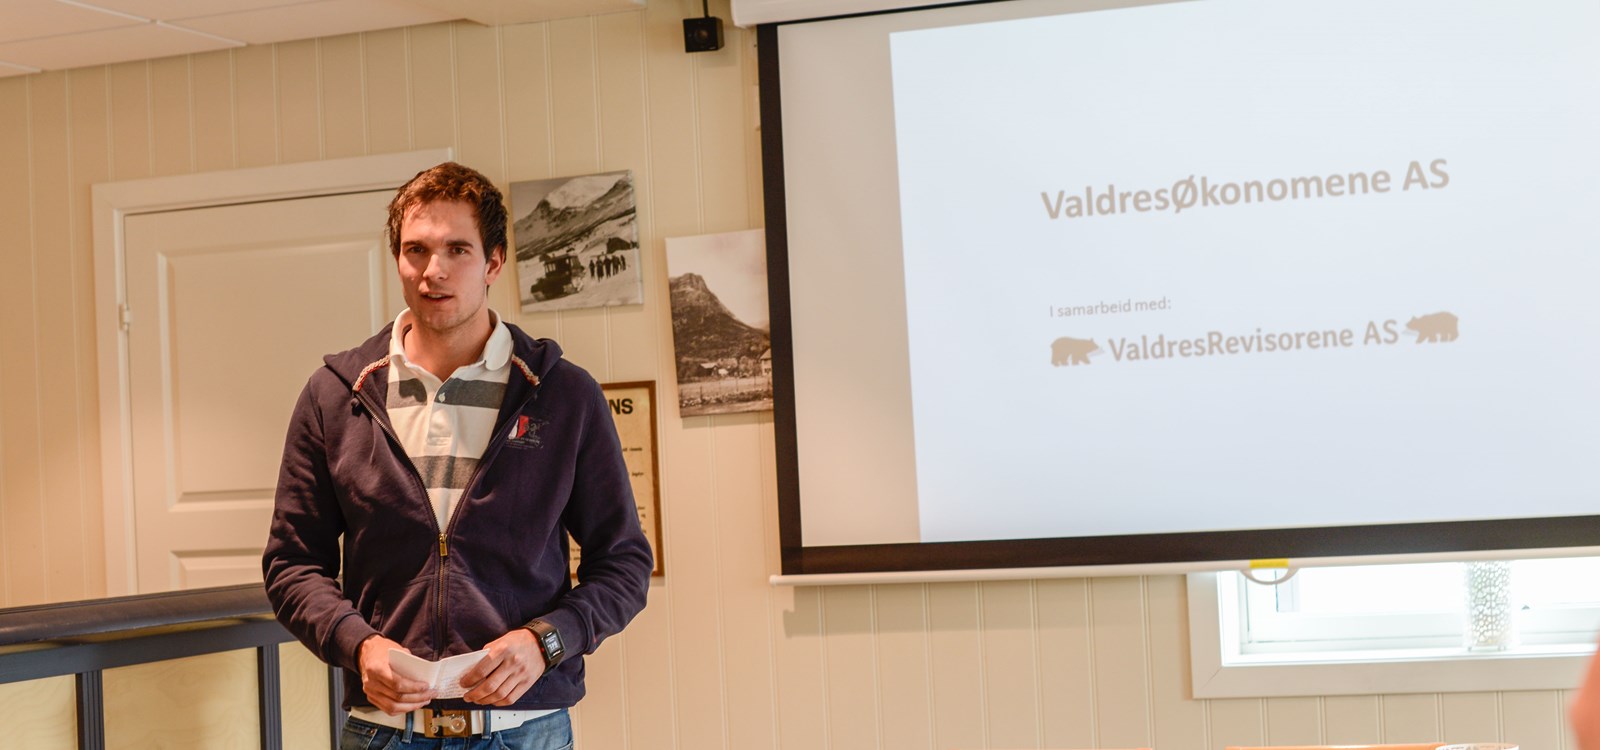 Steffen Tronrud Jevne er Valdresøkonomane sin mann i Vang og informerte om kva dei tilbyr.